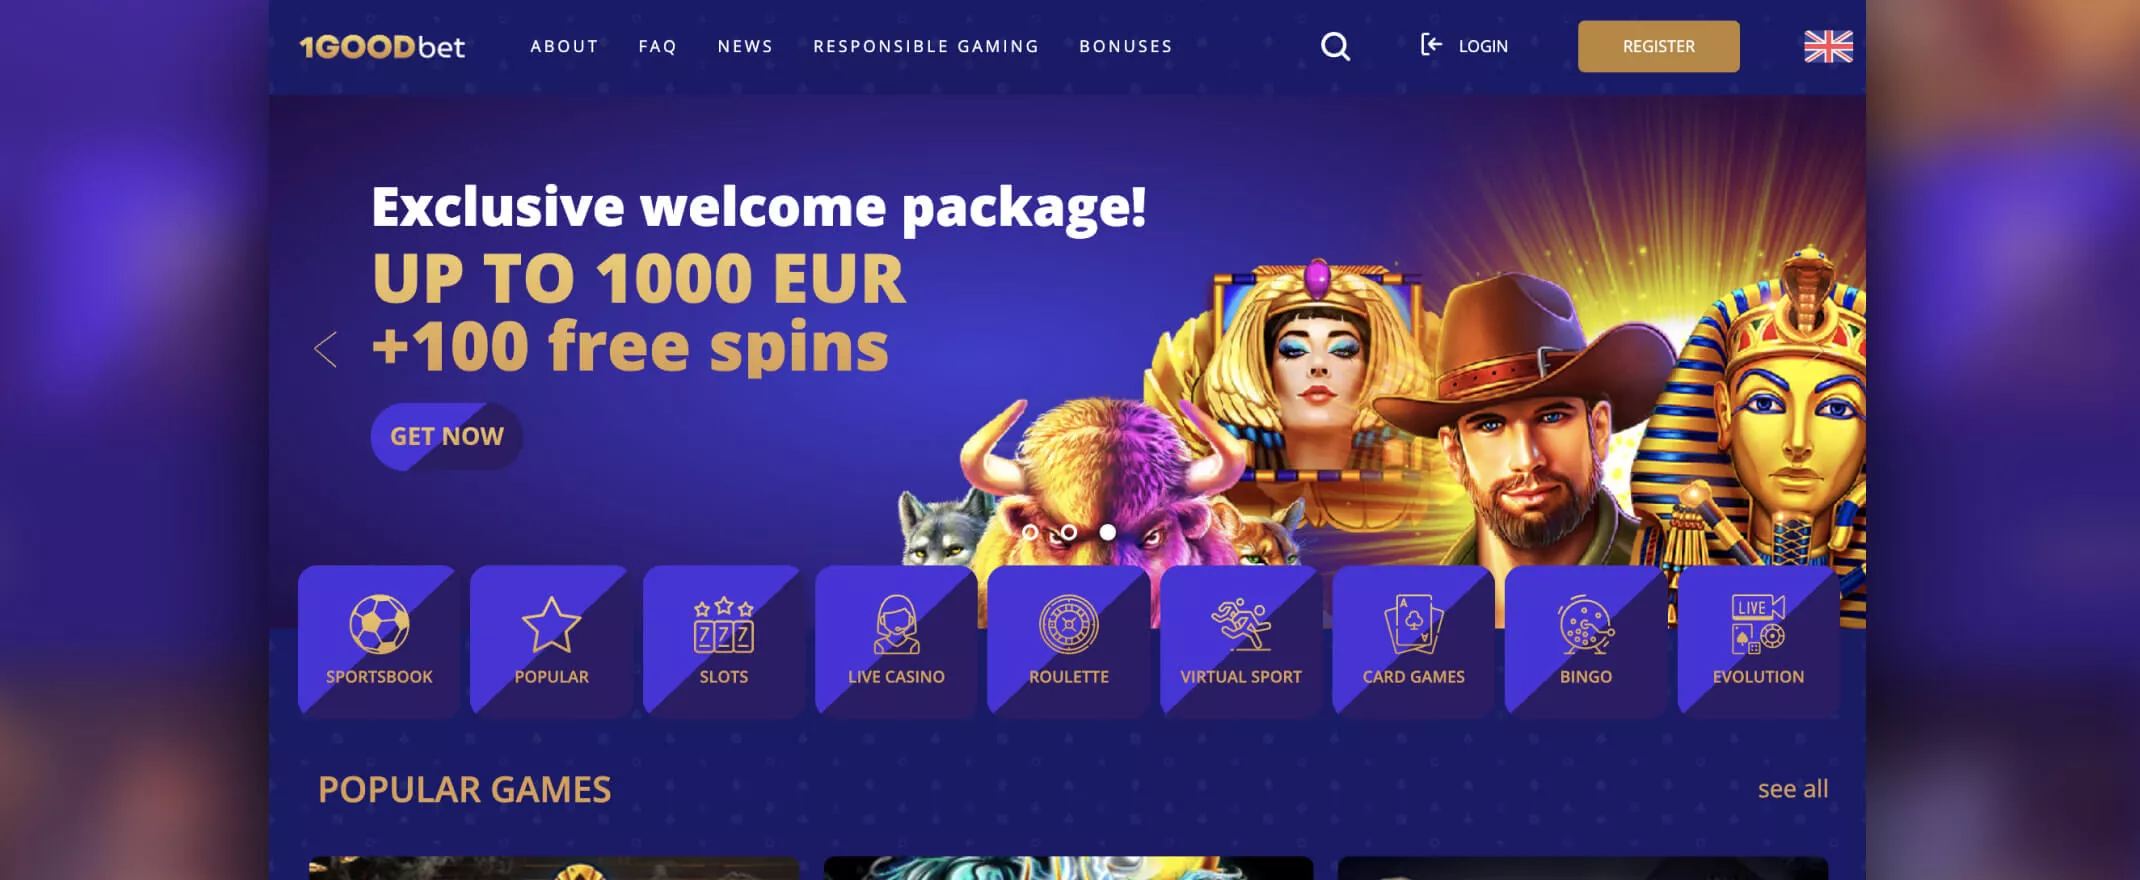 1goodbet casino homepage screenshot